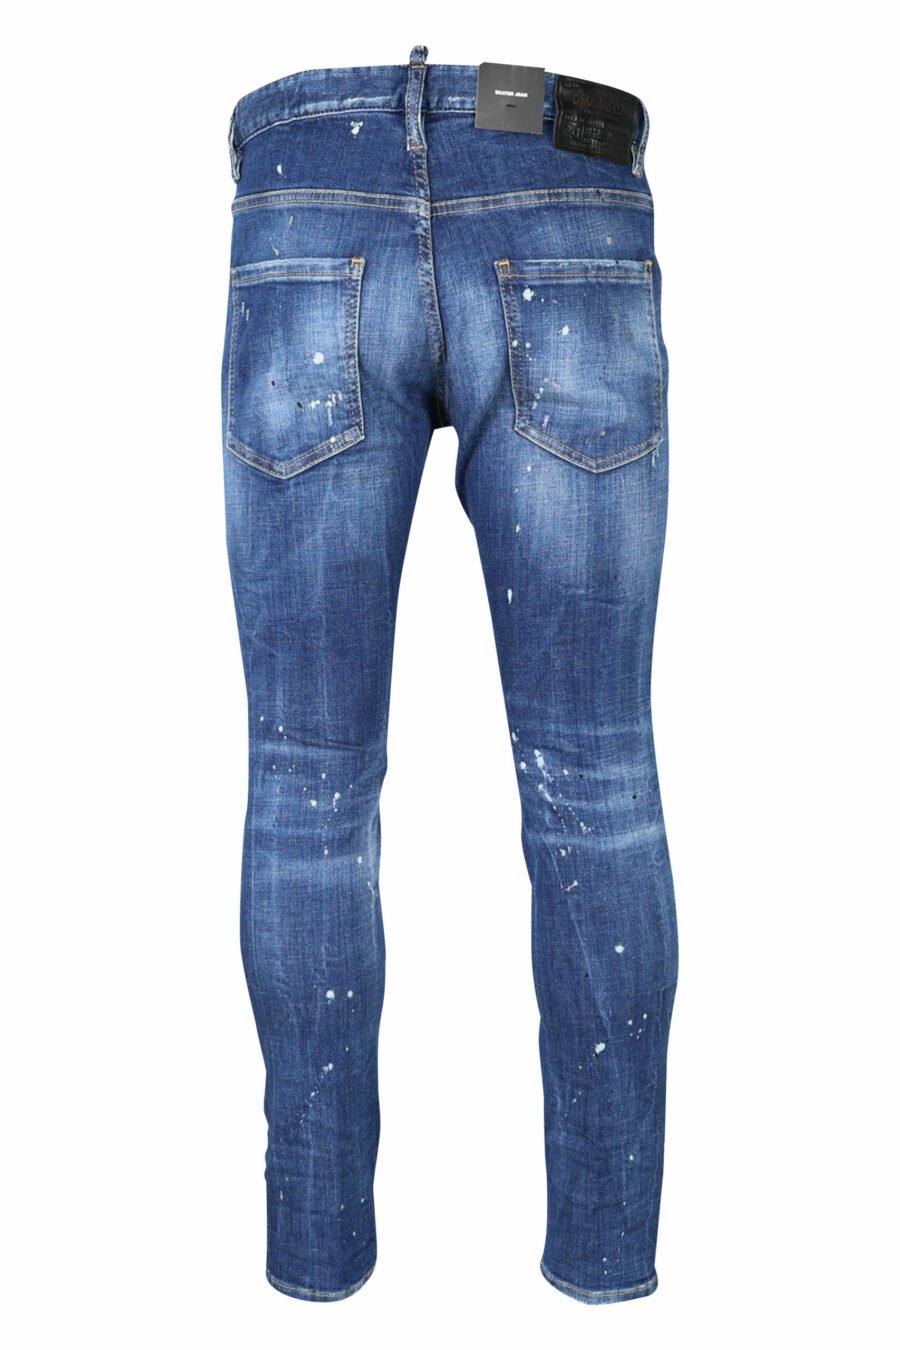 Pantalón vaquero "super twinkey jean" azul desgastado con roto negro - 8054148124328 2 scaled